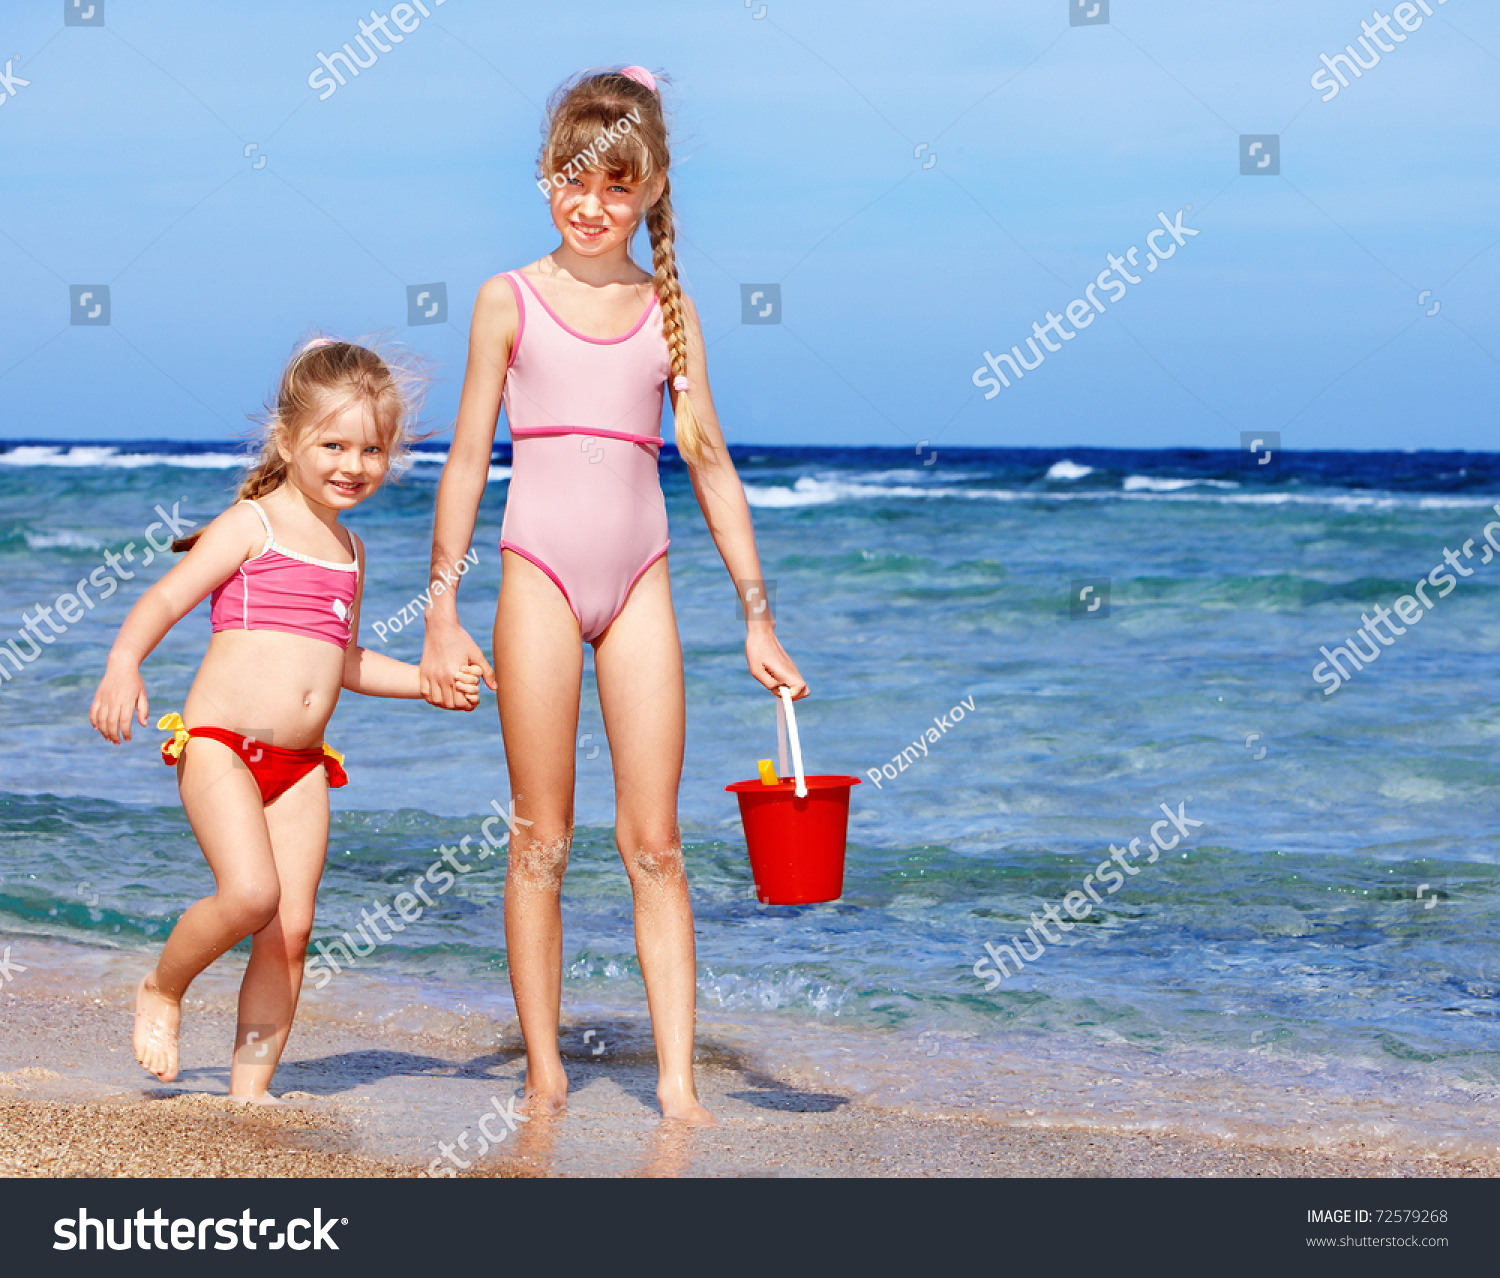 я на пляже детское